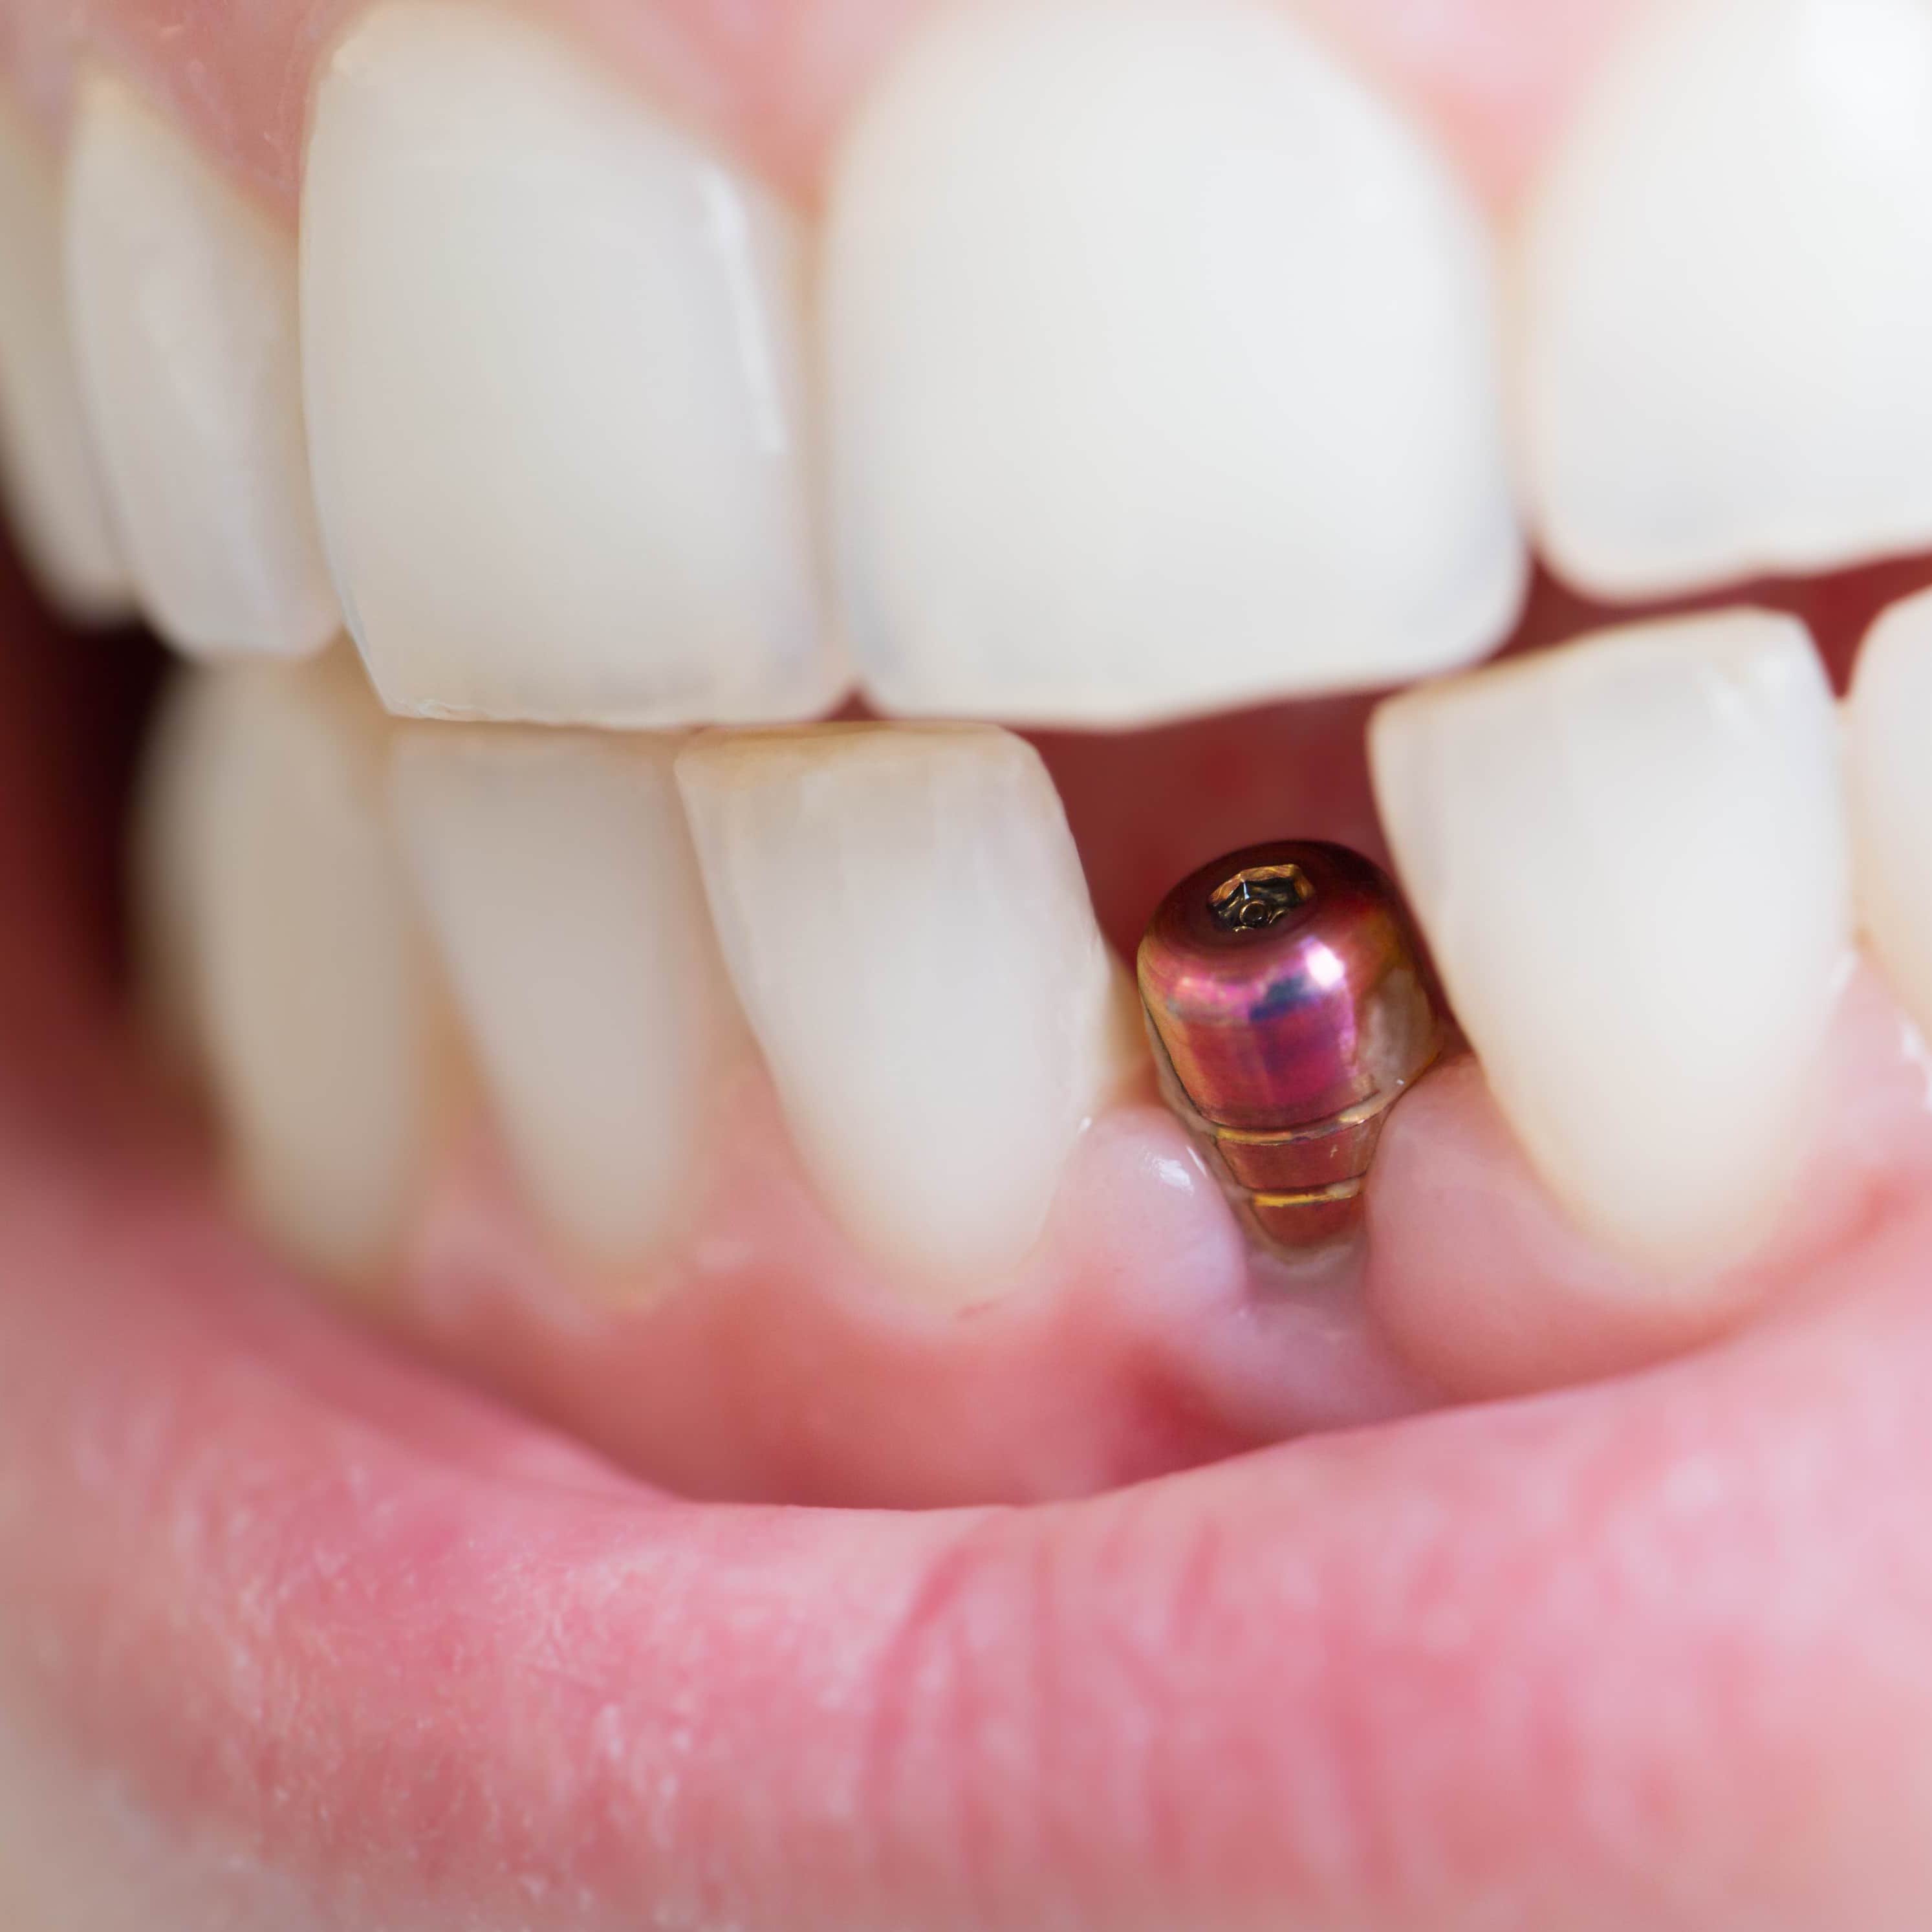 Мини импланты в Калининграде – Установка мини имплантов в Калининграде в ортодонтии по доступной цене в стоматологии